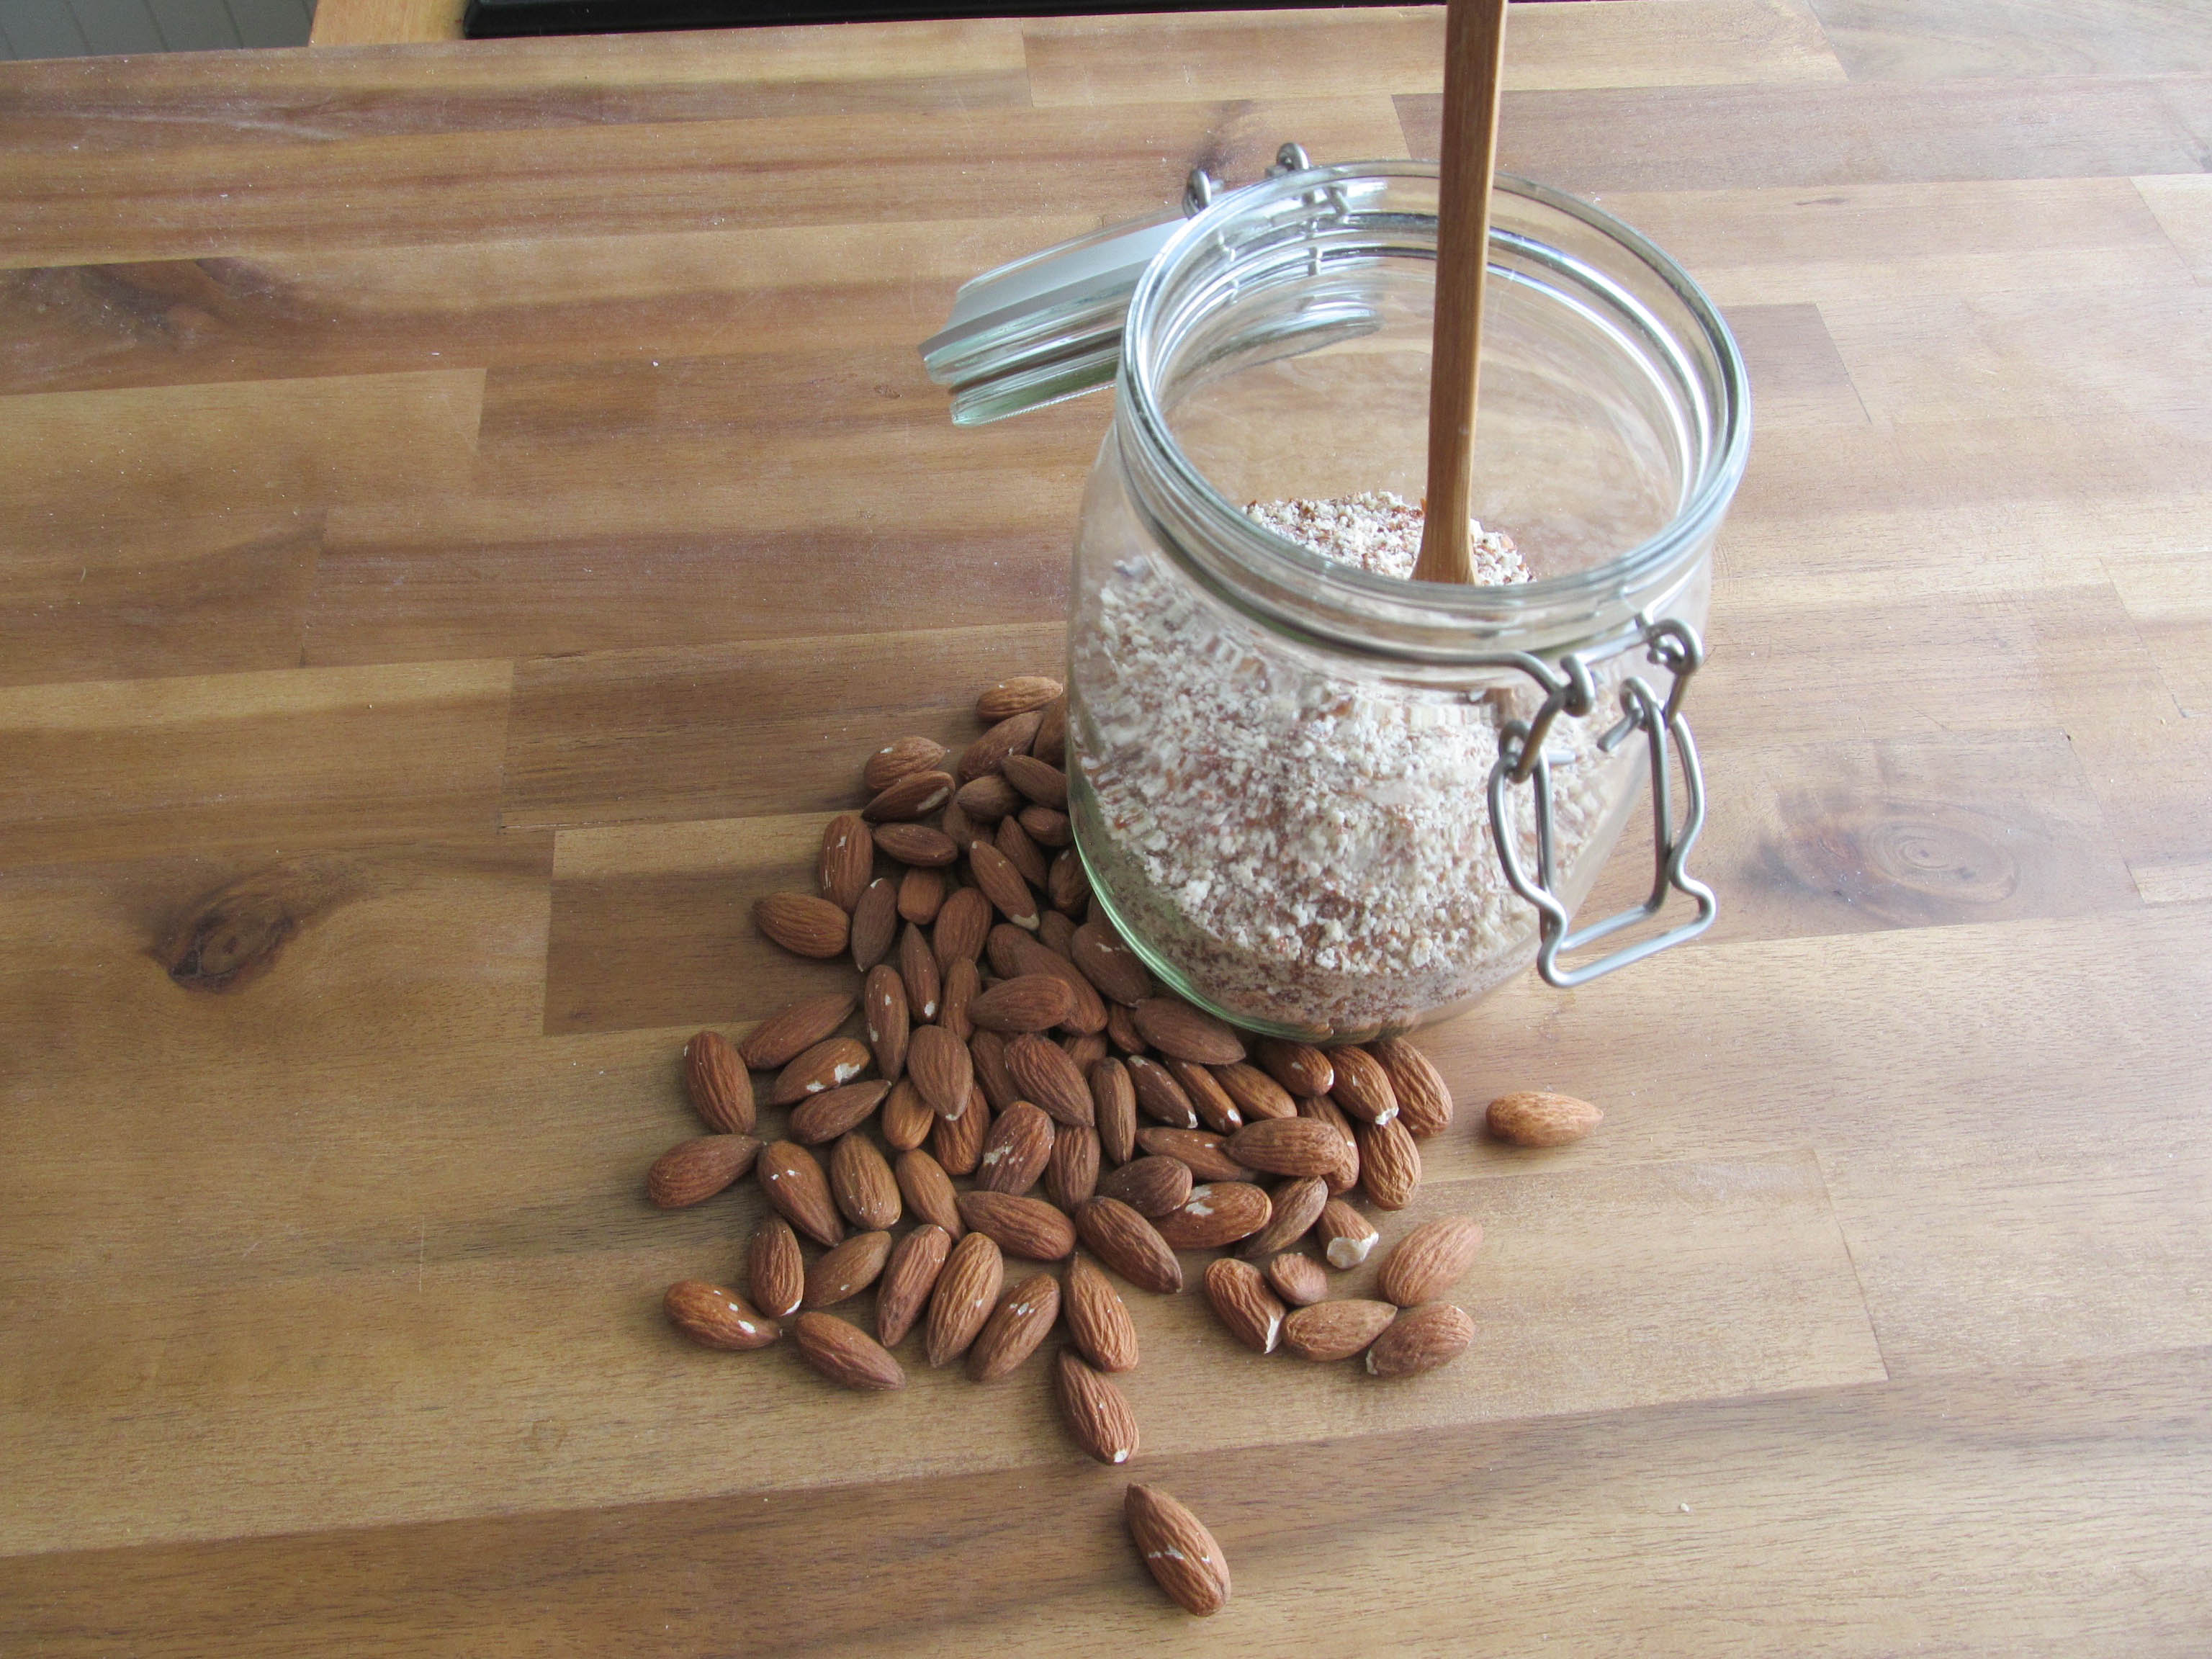 How to make almond flour